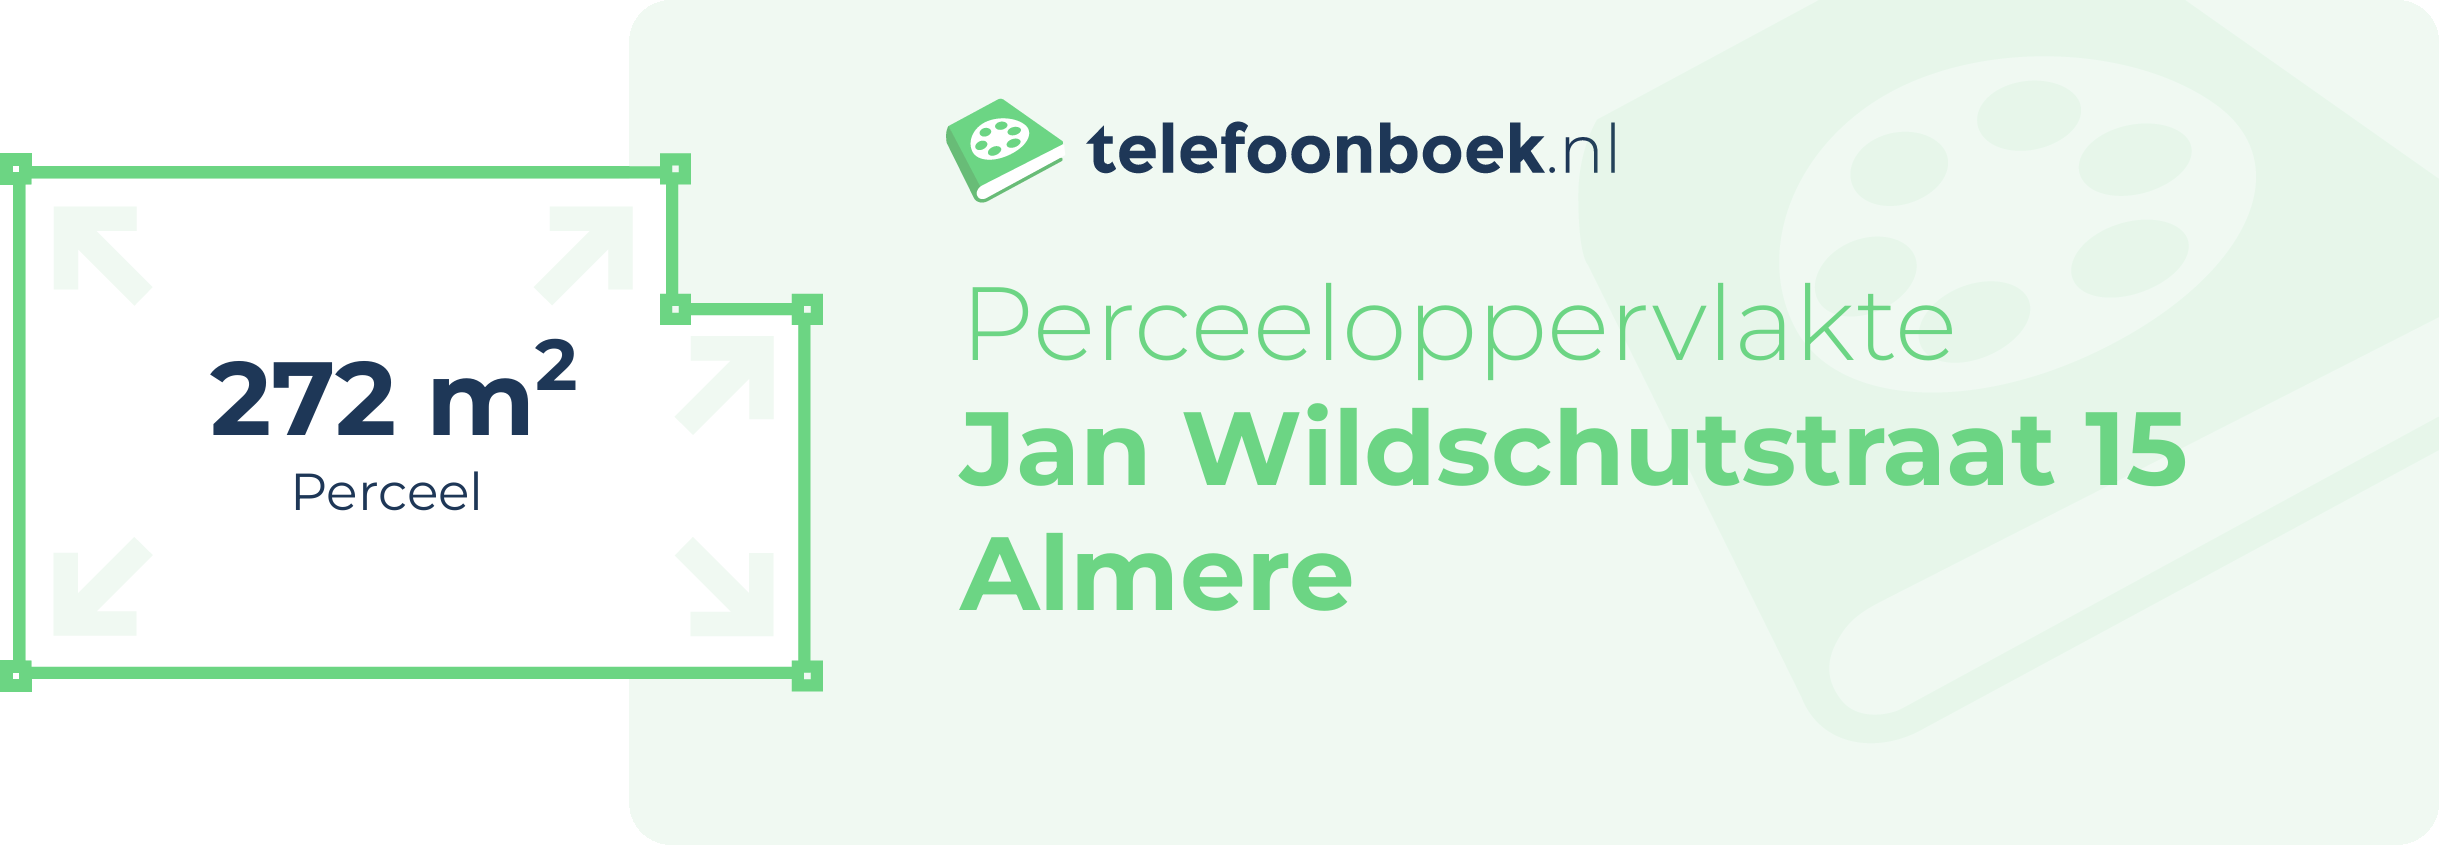 Perceeloppervlakte Jan Wildschutstraat 15 Almere